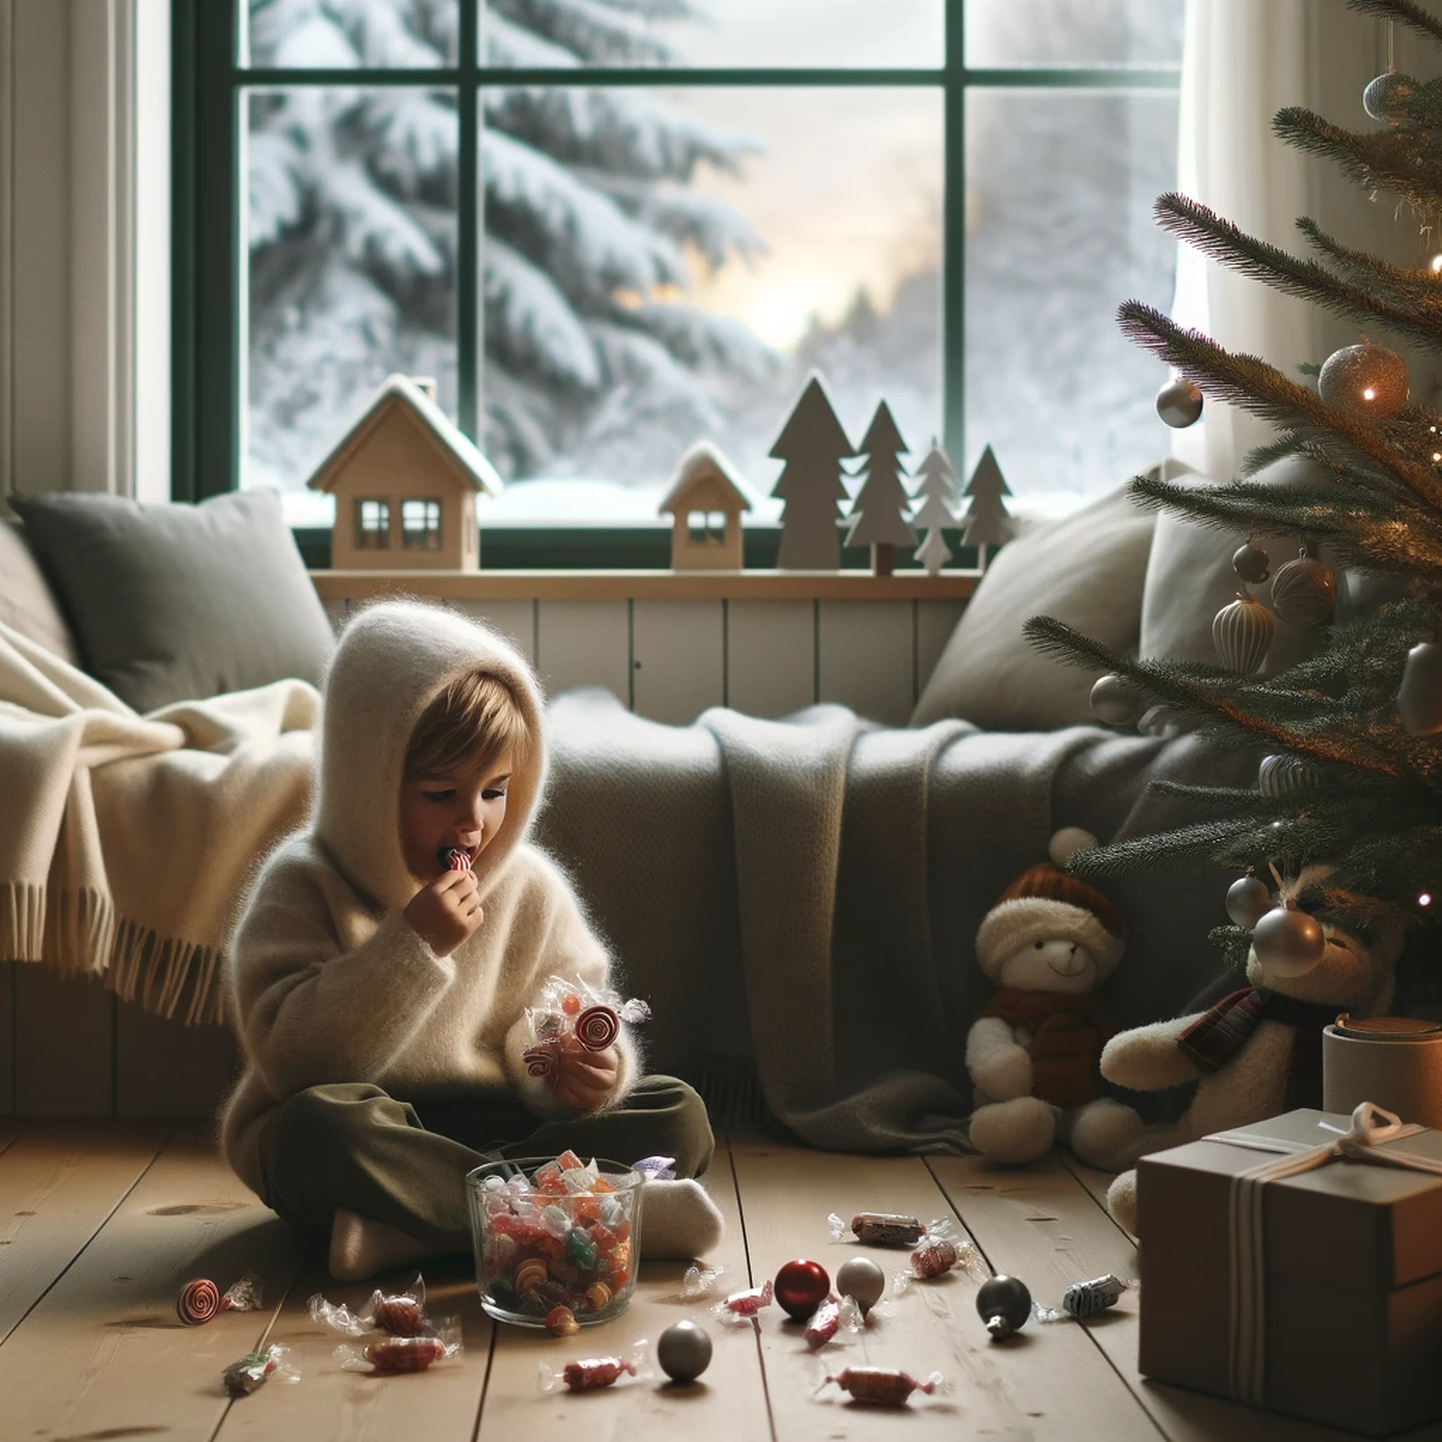 Jõulude eel ja ajal on lihtne suhkrut mitu korda üle tarbida. Eriti lastel, keda hellitatakse kommidega. 